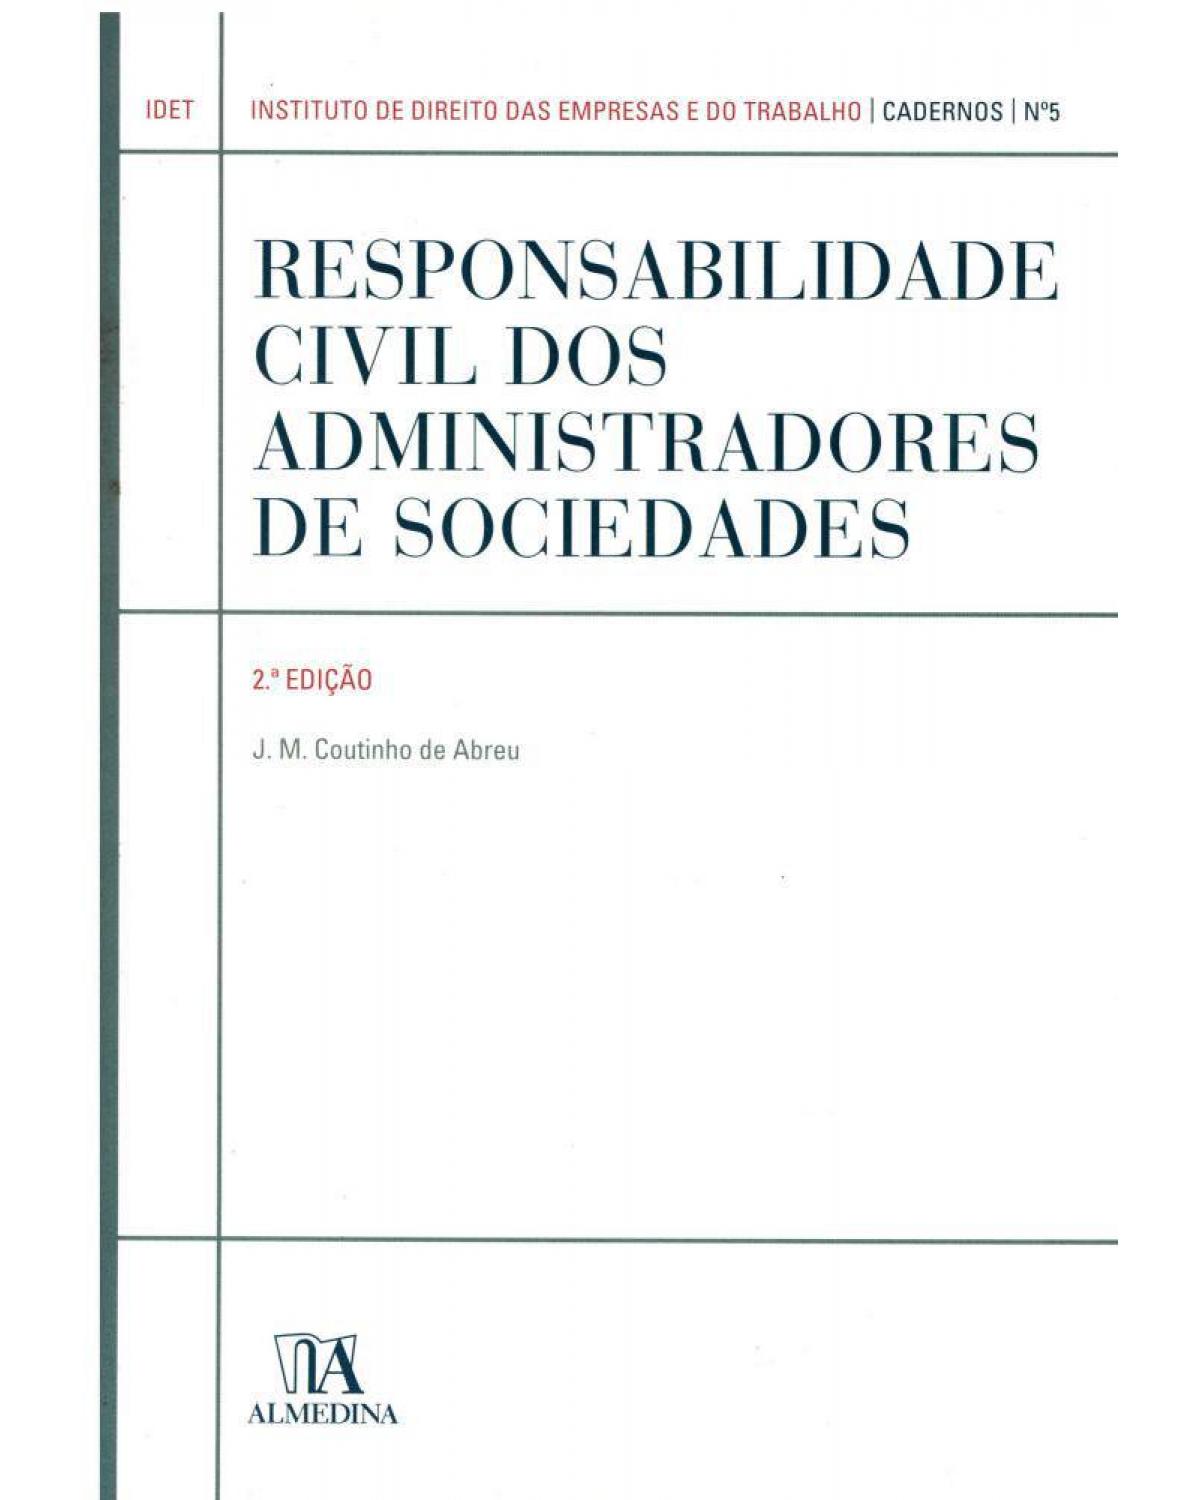 Responsabilidade civil dos administradores de sociedades - 2ª Edição | 2010